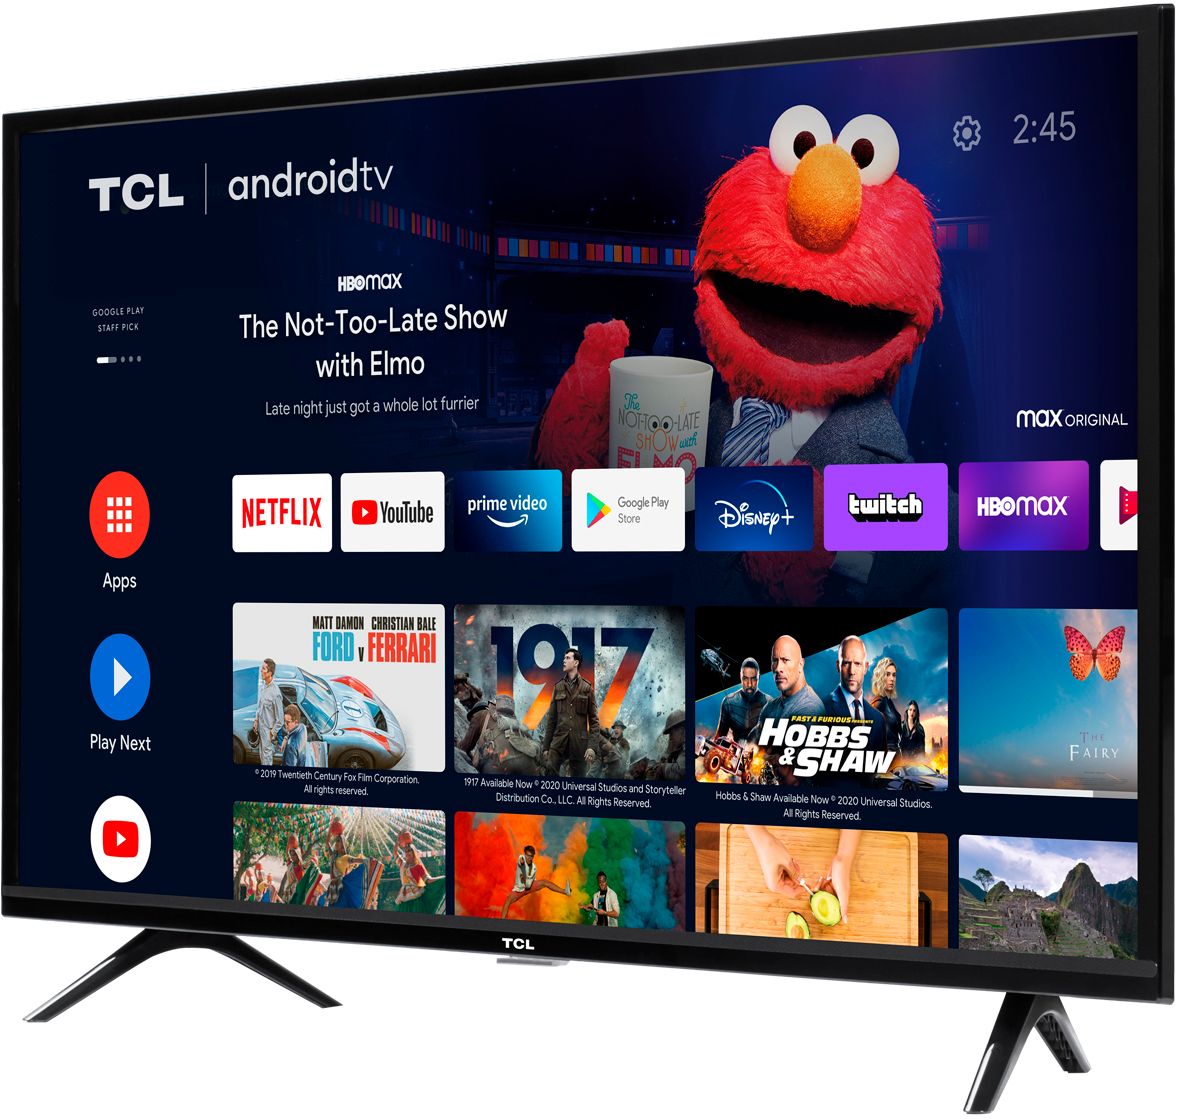 正規品の通販 TCL TV) (Android TV Smart HD 32S515 テレビ